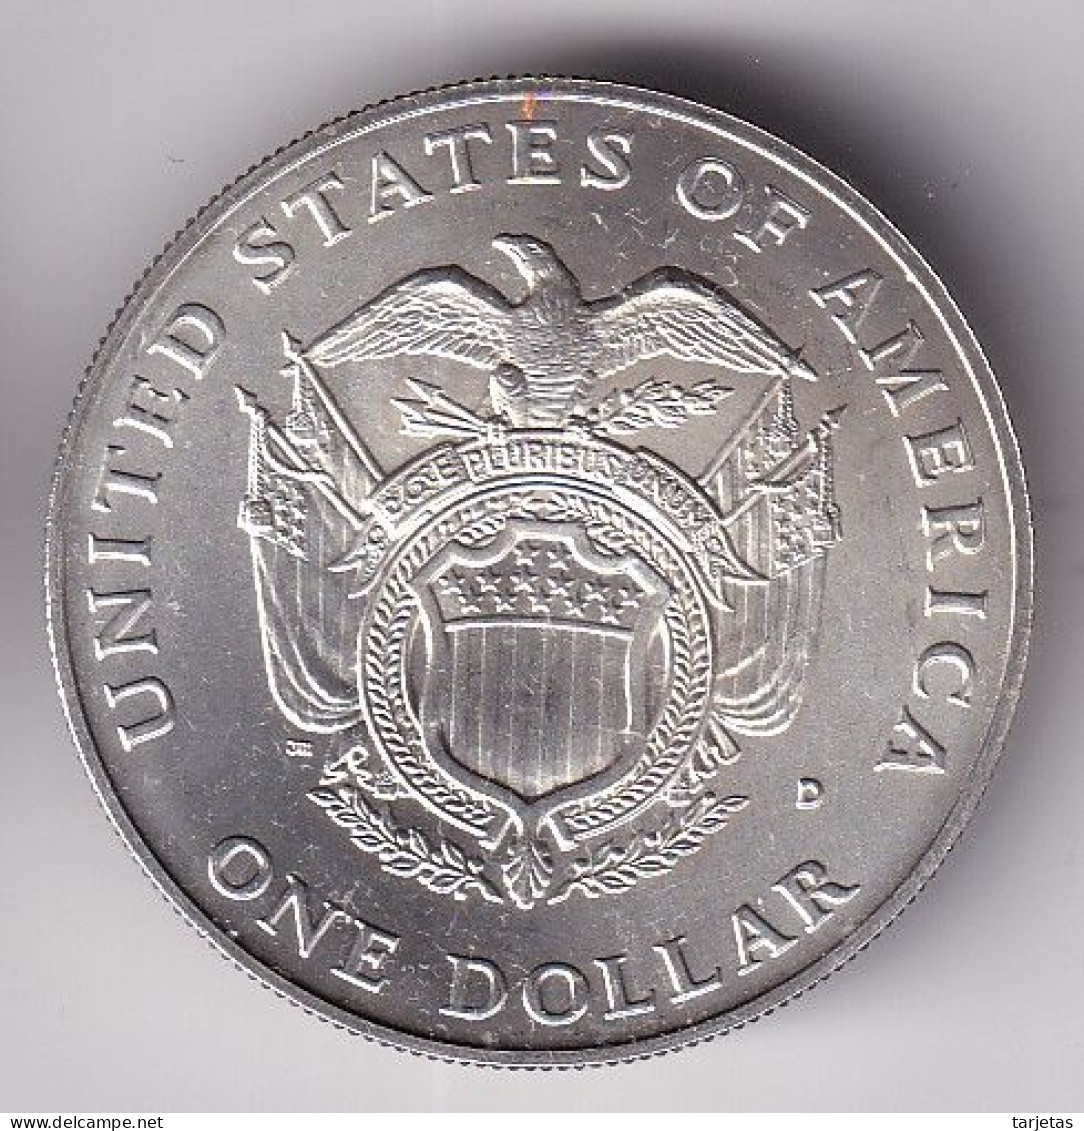 MONEDA DE PLATA DE ESTADOS UNIDOS DE 1 DOLLAR DEL AÑO 1987 (SILVER-ARGENT) - Commemorative